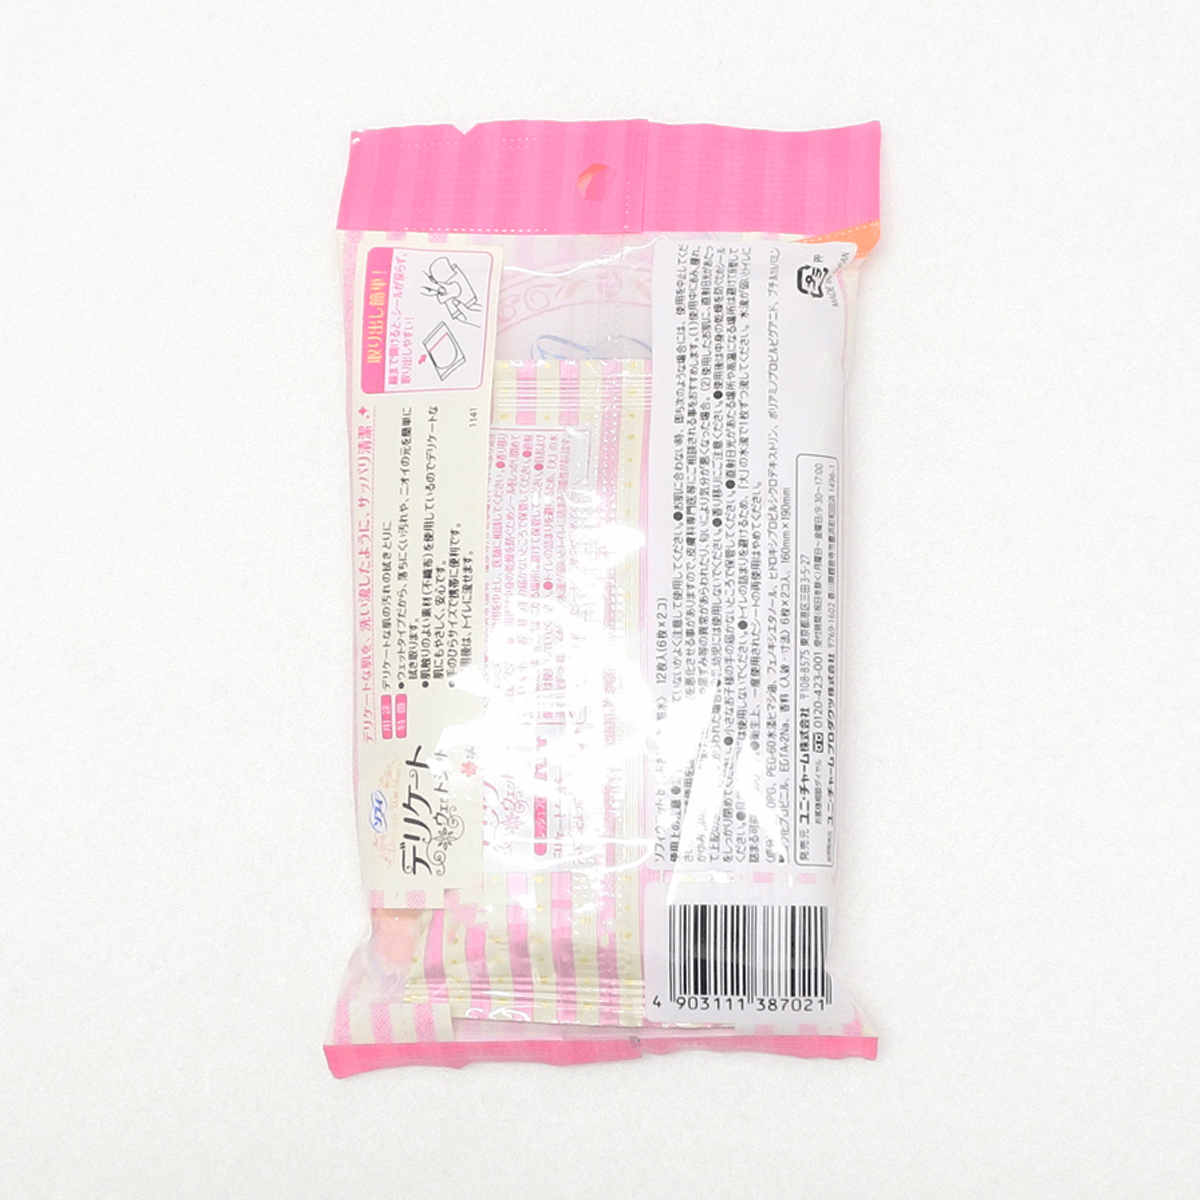 Sofy 蘇菲 生理期潔淨護理濕紙巾(清新花香) 6抽×2包